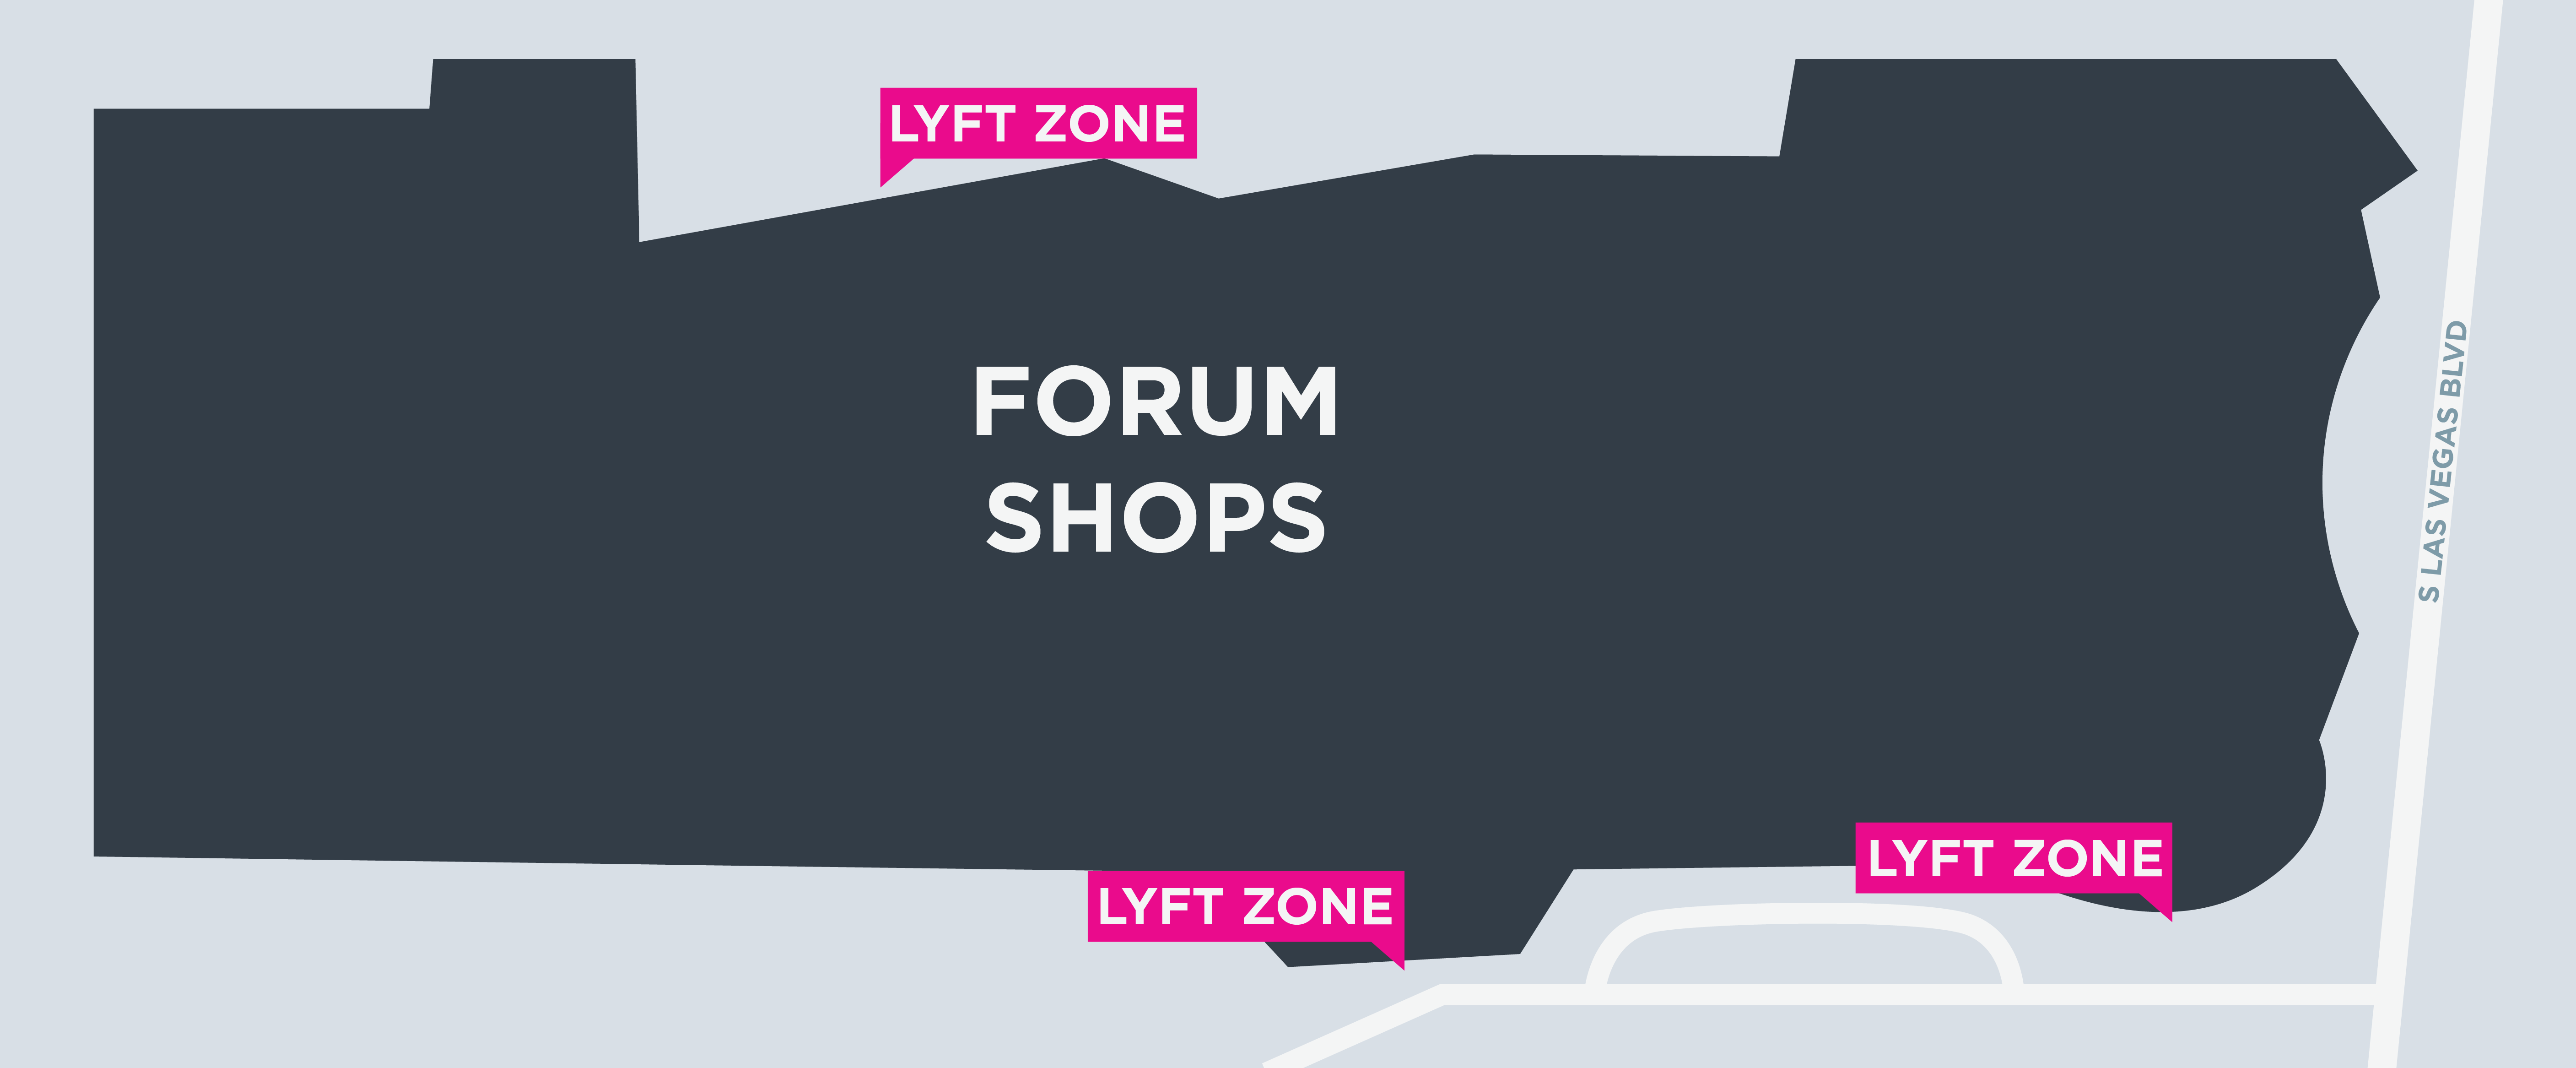 Carte des zones Lyft au Forum de Las Vegas.